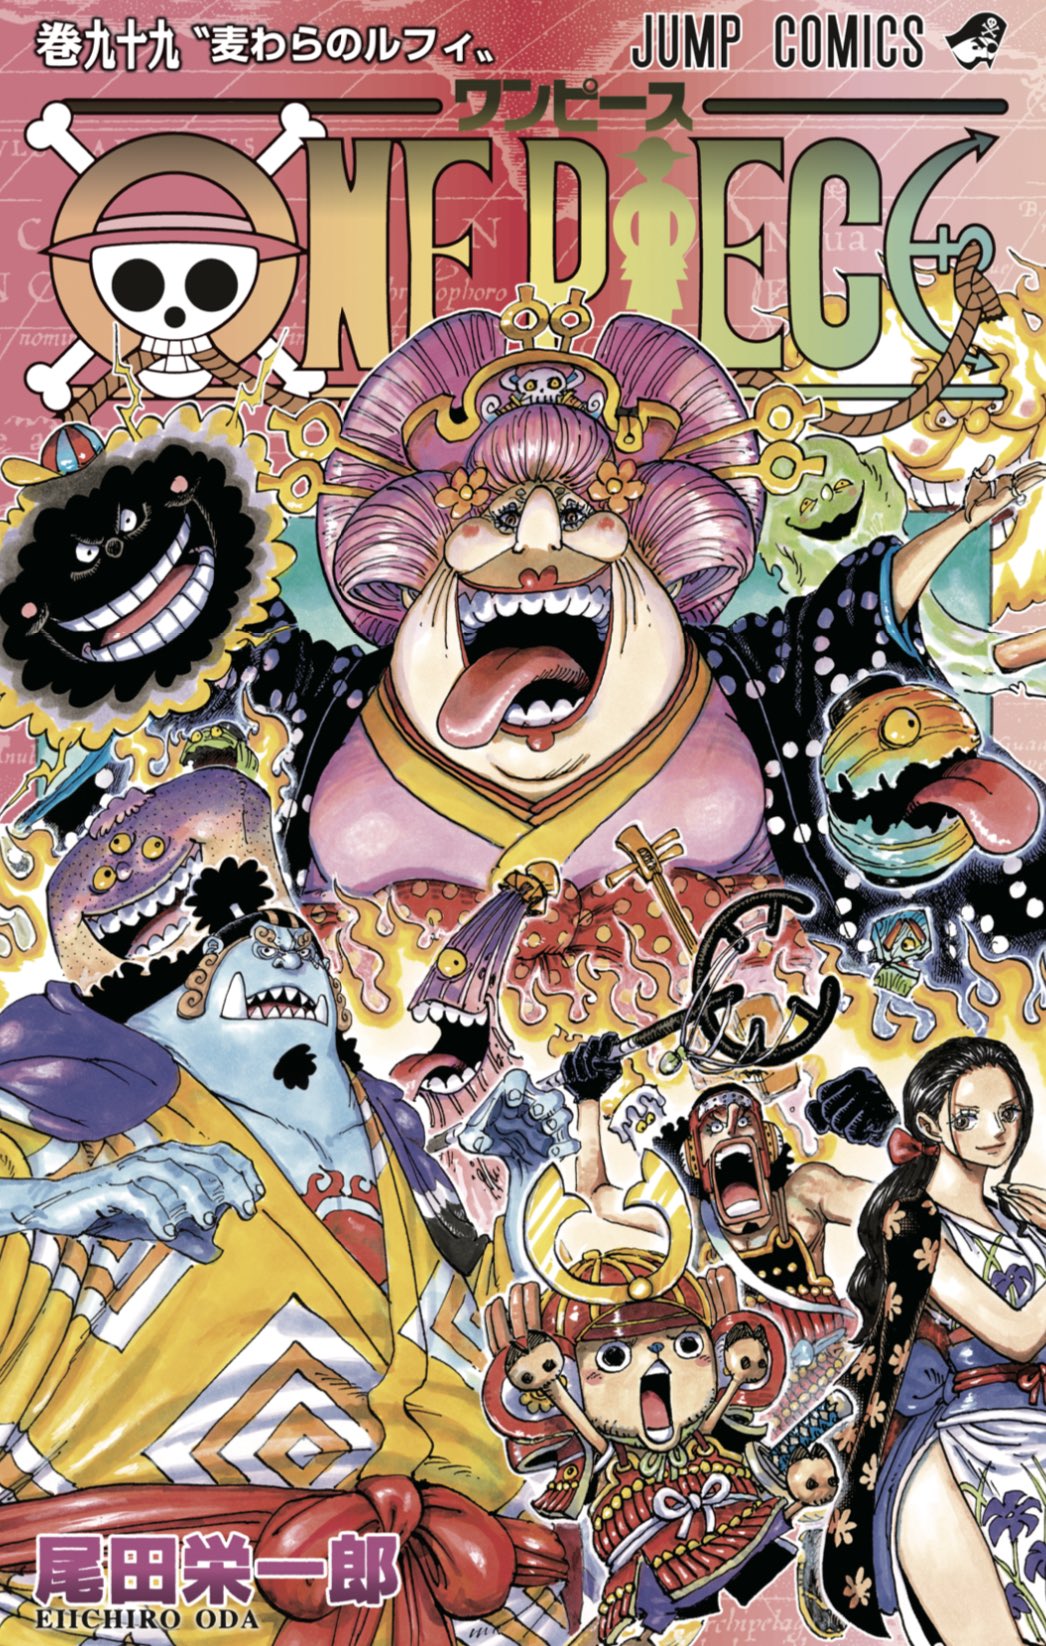 One Piece スタッフ 公式 Official そしてone Piece 99巻のカバー を公開 発売は6月4日 金 みんな楽しみにしててね 続く100巻 101巻はどんなカバーになるかな 99 101は繋がるカバーです 乞うご期待 T Co Rta7xoyi9p Twitter